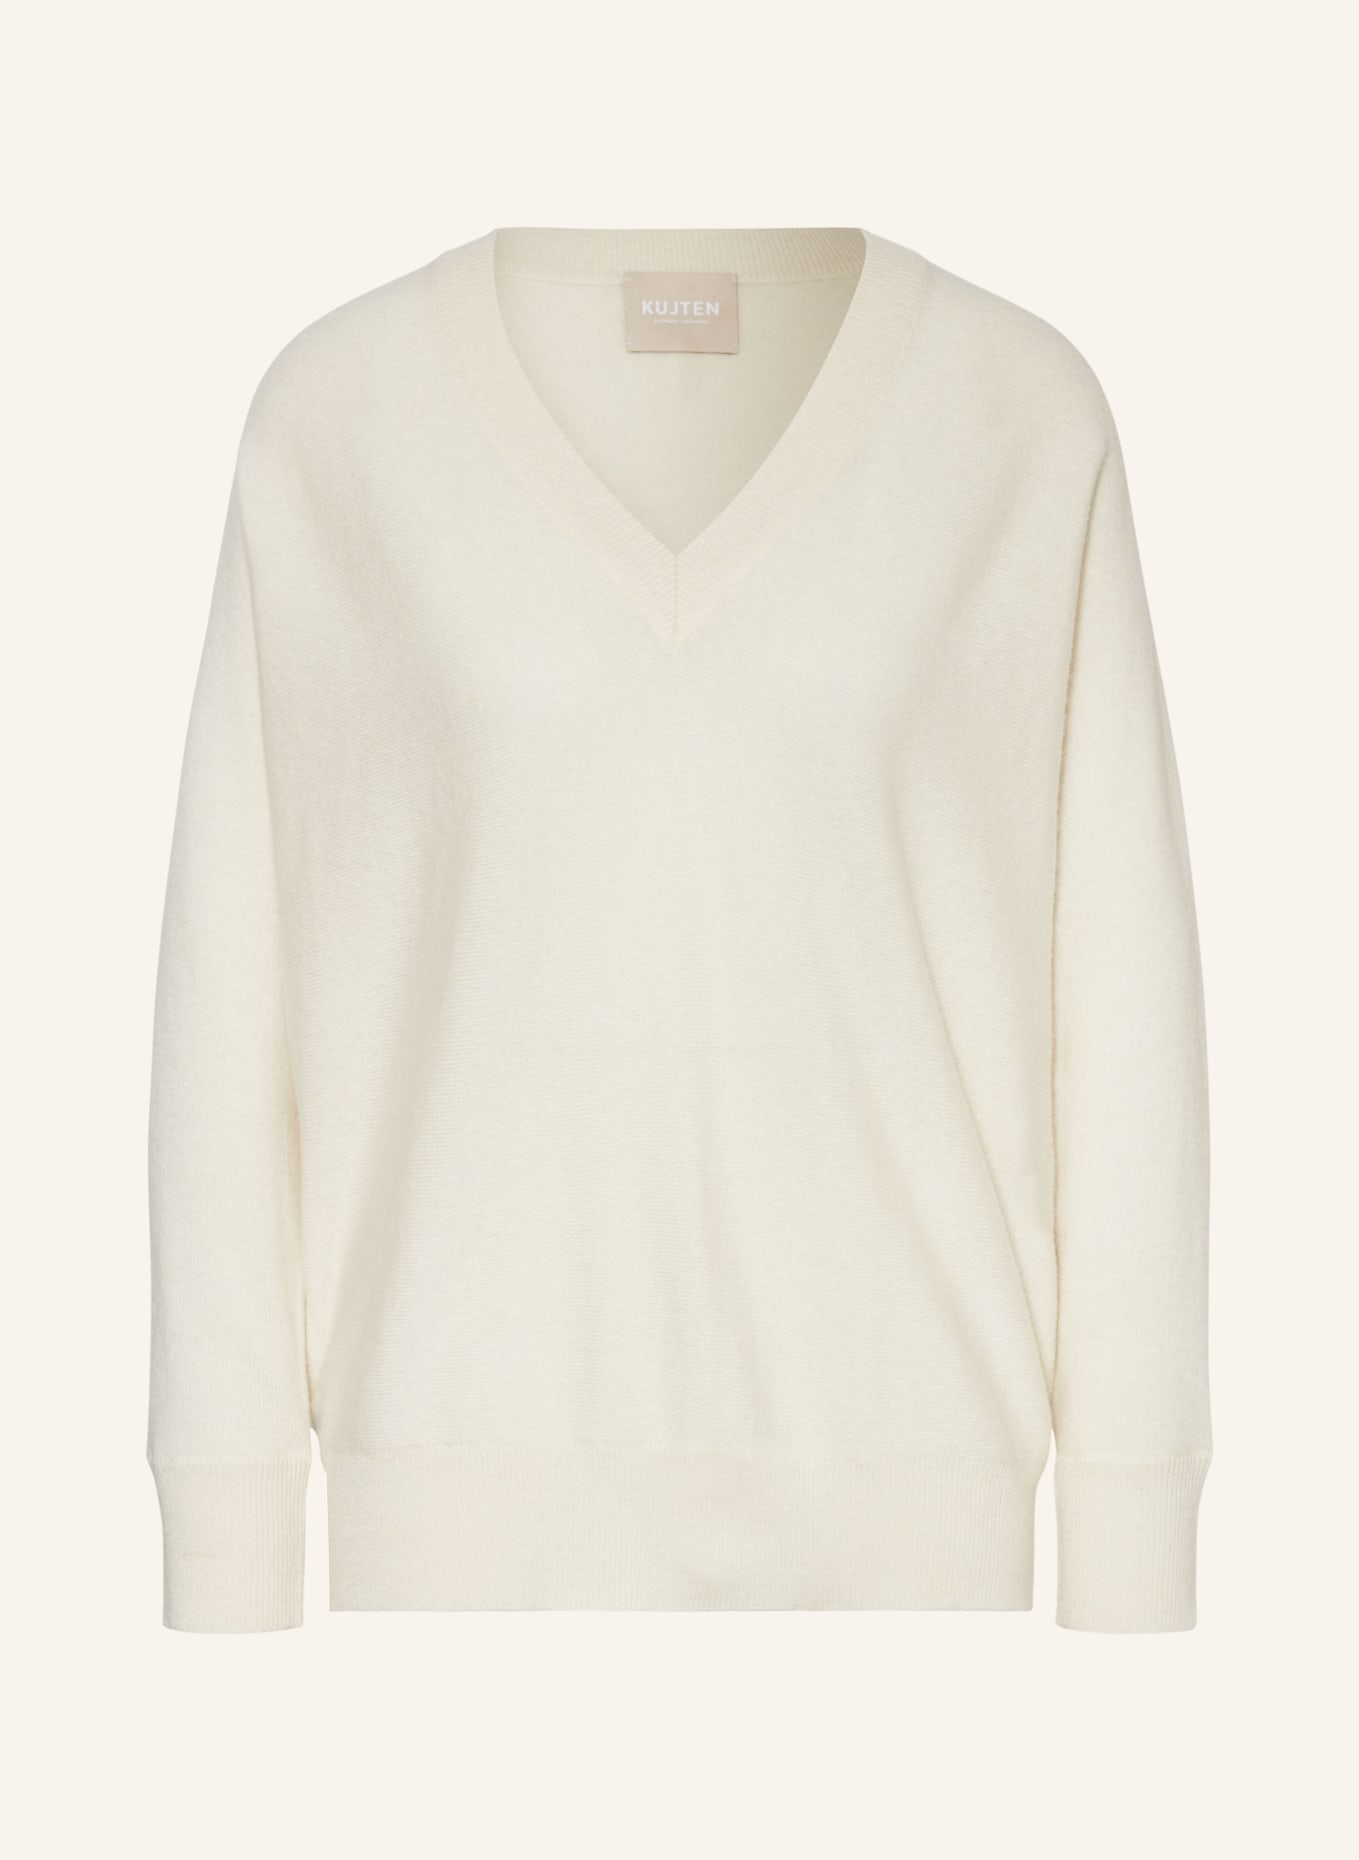 KUJTEN Cashmere sweater, Color: ECRU (Image 1)